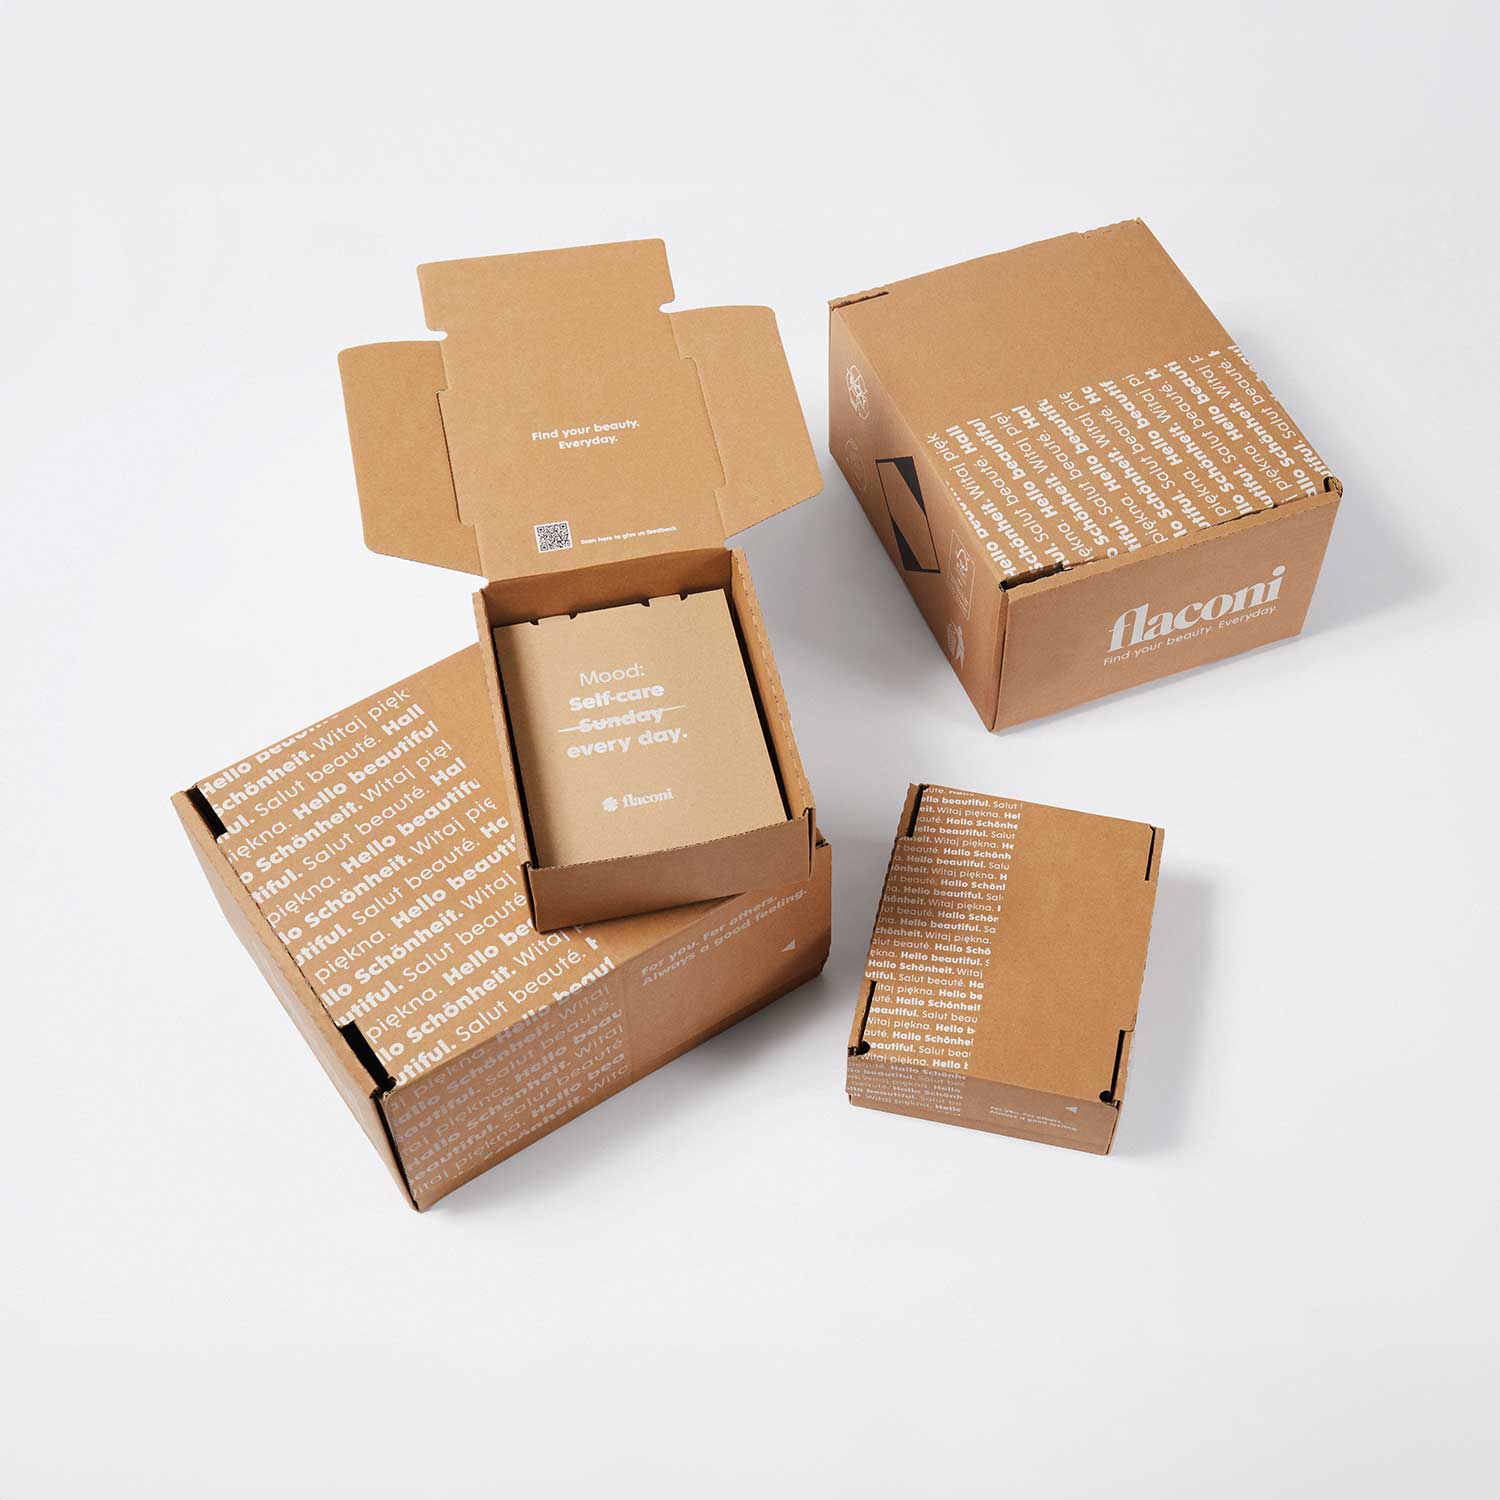 Emballages d’expédition pour l’e-commerce de flaconi